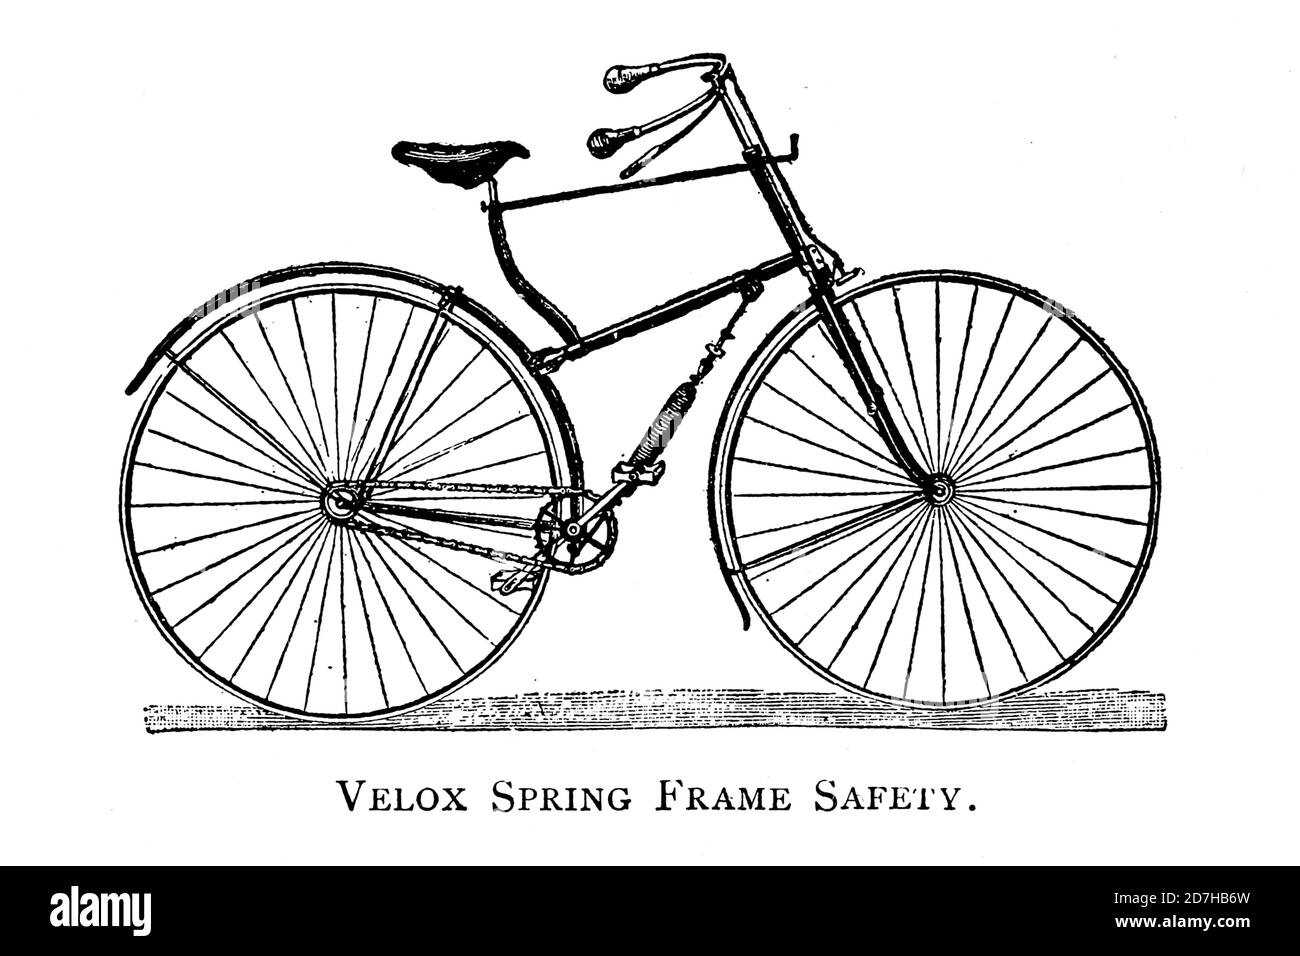 Vélo de sécurité à cadre de ressort de velox de roues et Wheeling; un manuel indispensable pour les cyclistes, avec plus de deux cents illustrations de porter, LUT Banque D'Images